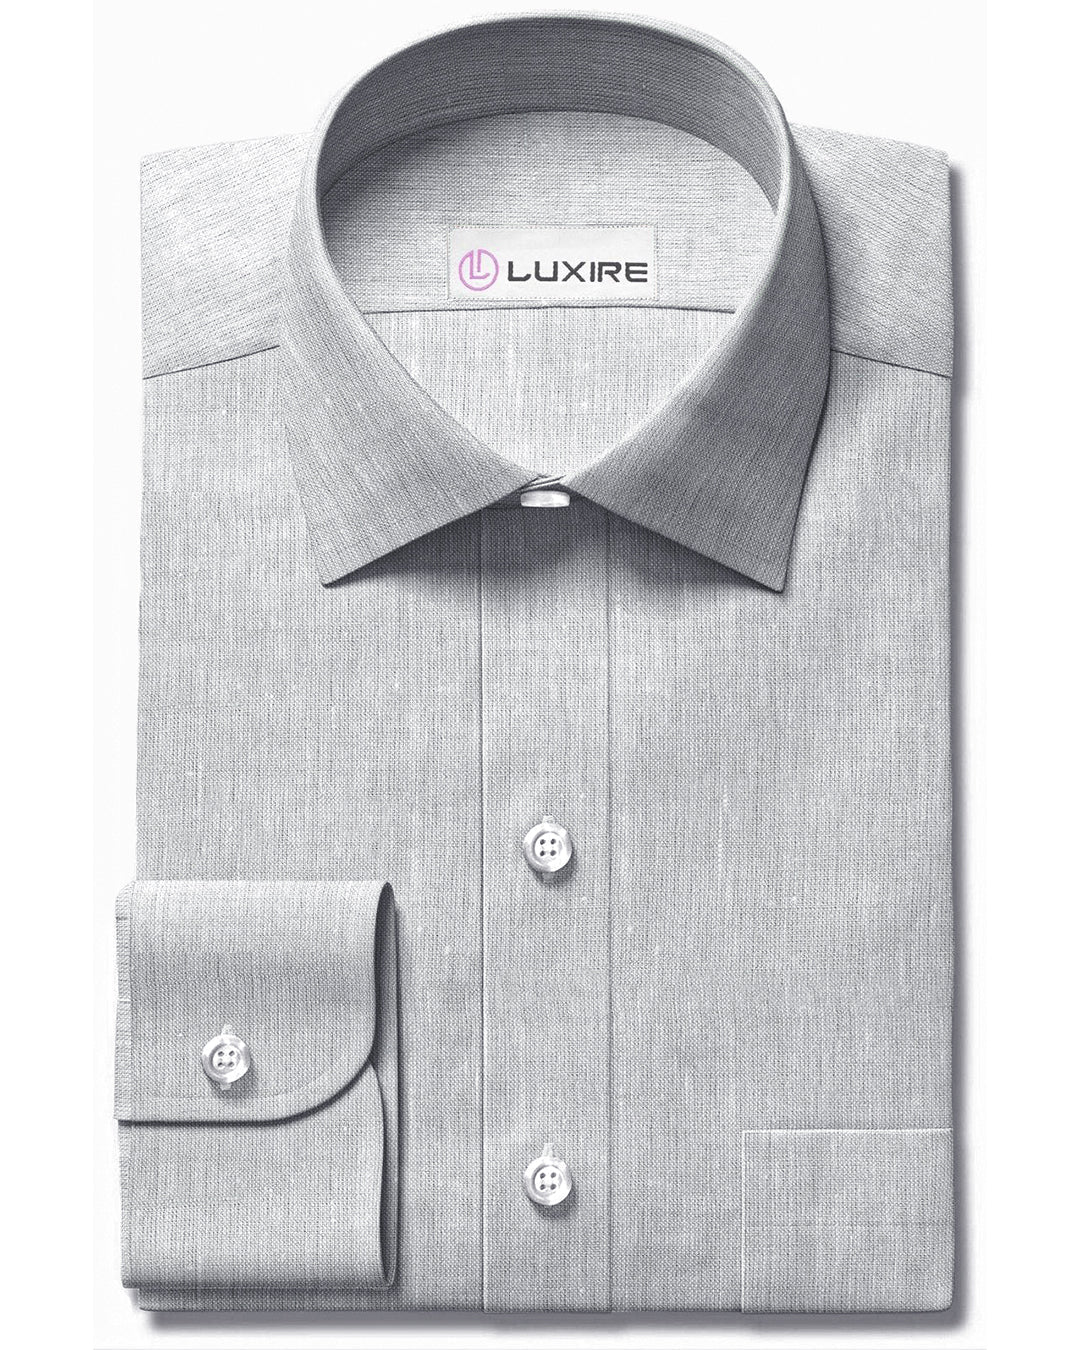 Front view of custom linen shirt for men in light grey